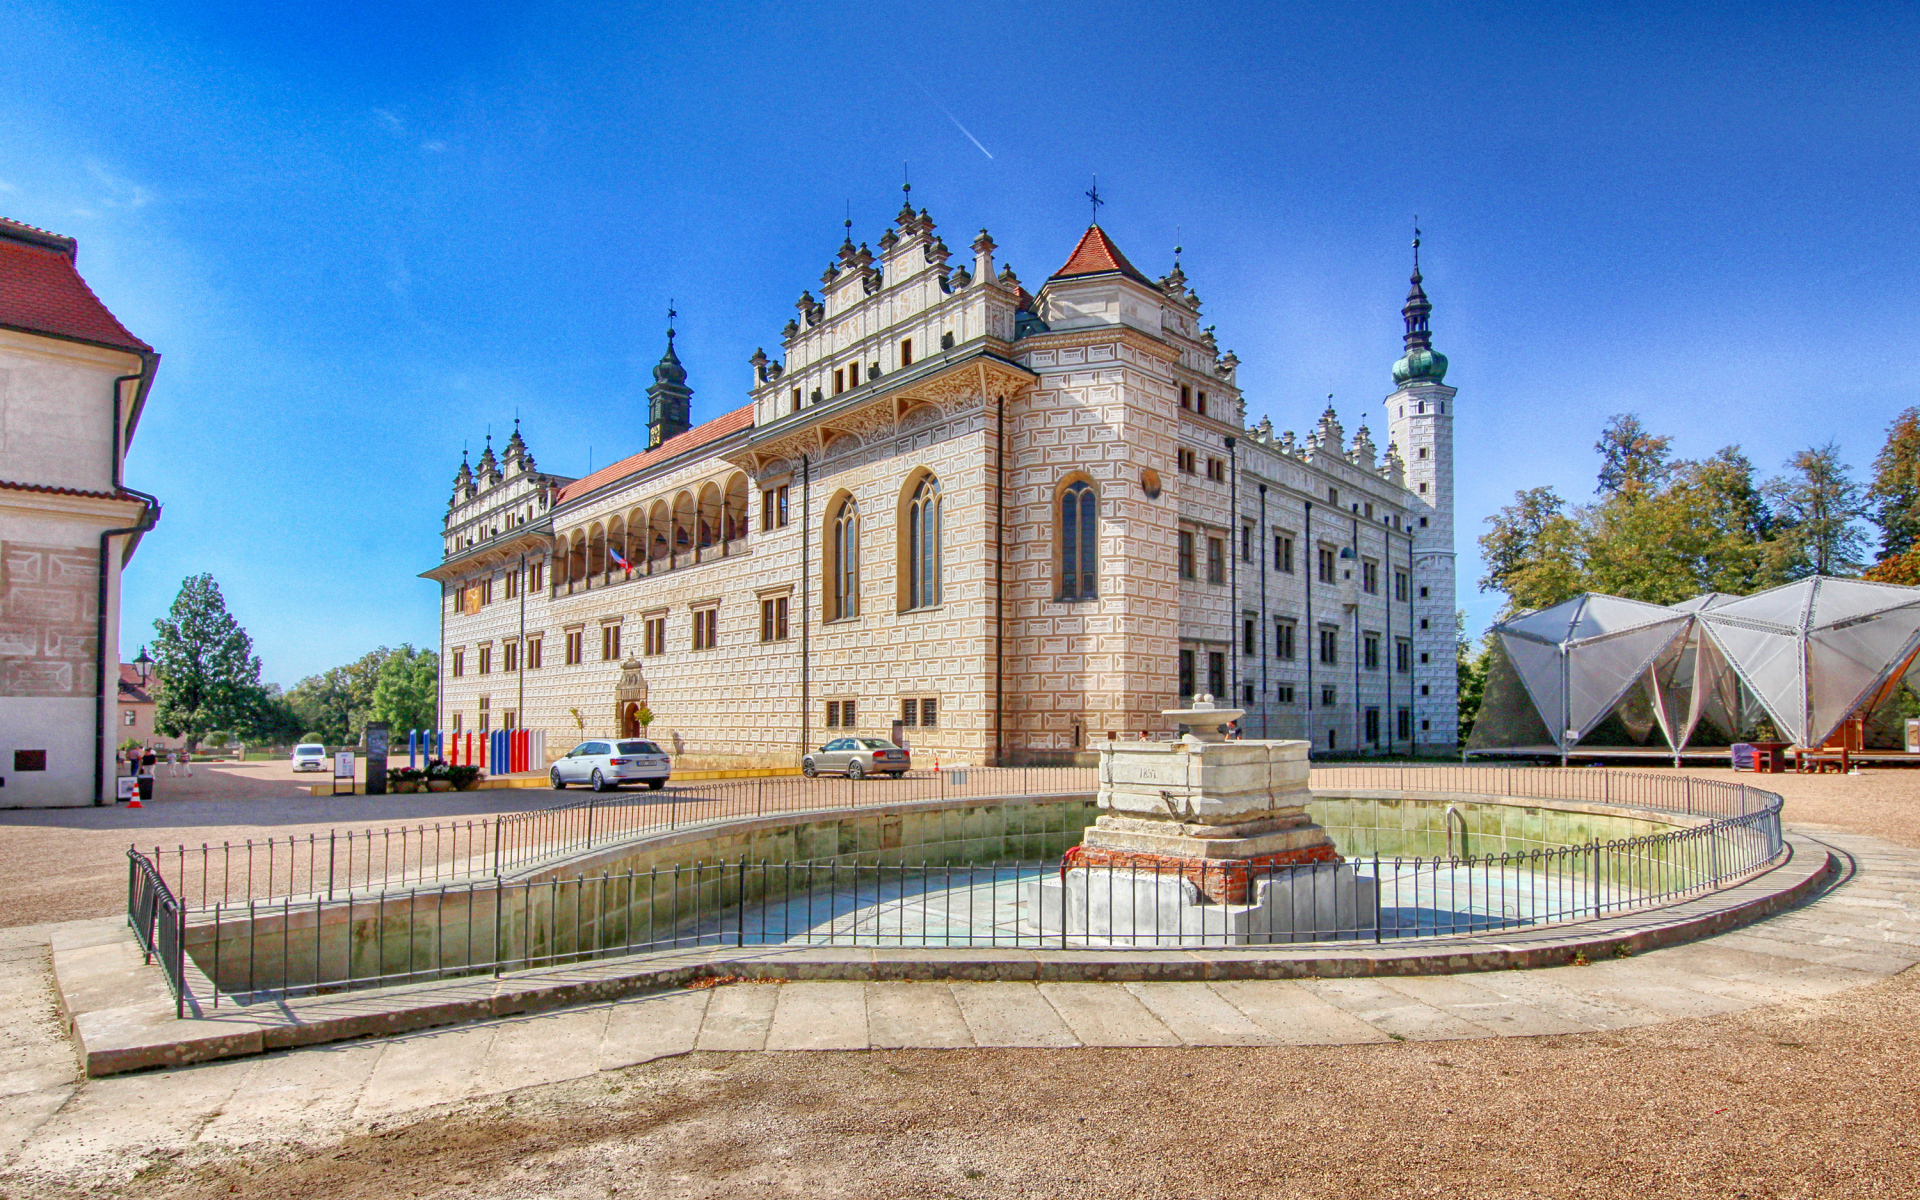 Литомишльский замок с фонтаном под голубым небом, Чехия